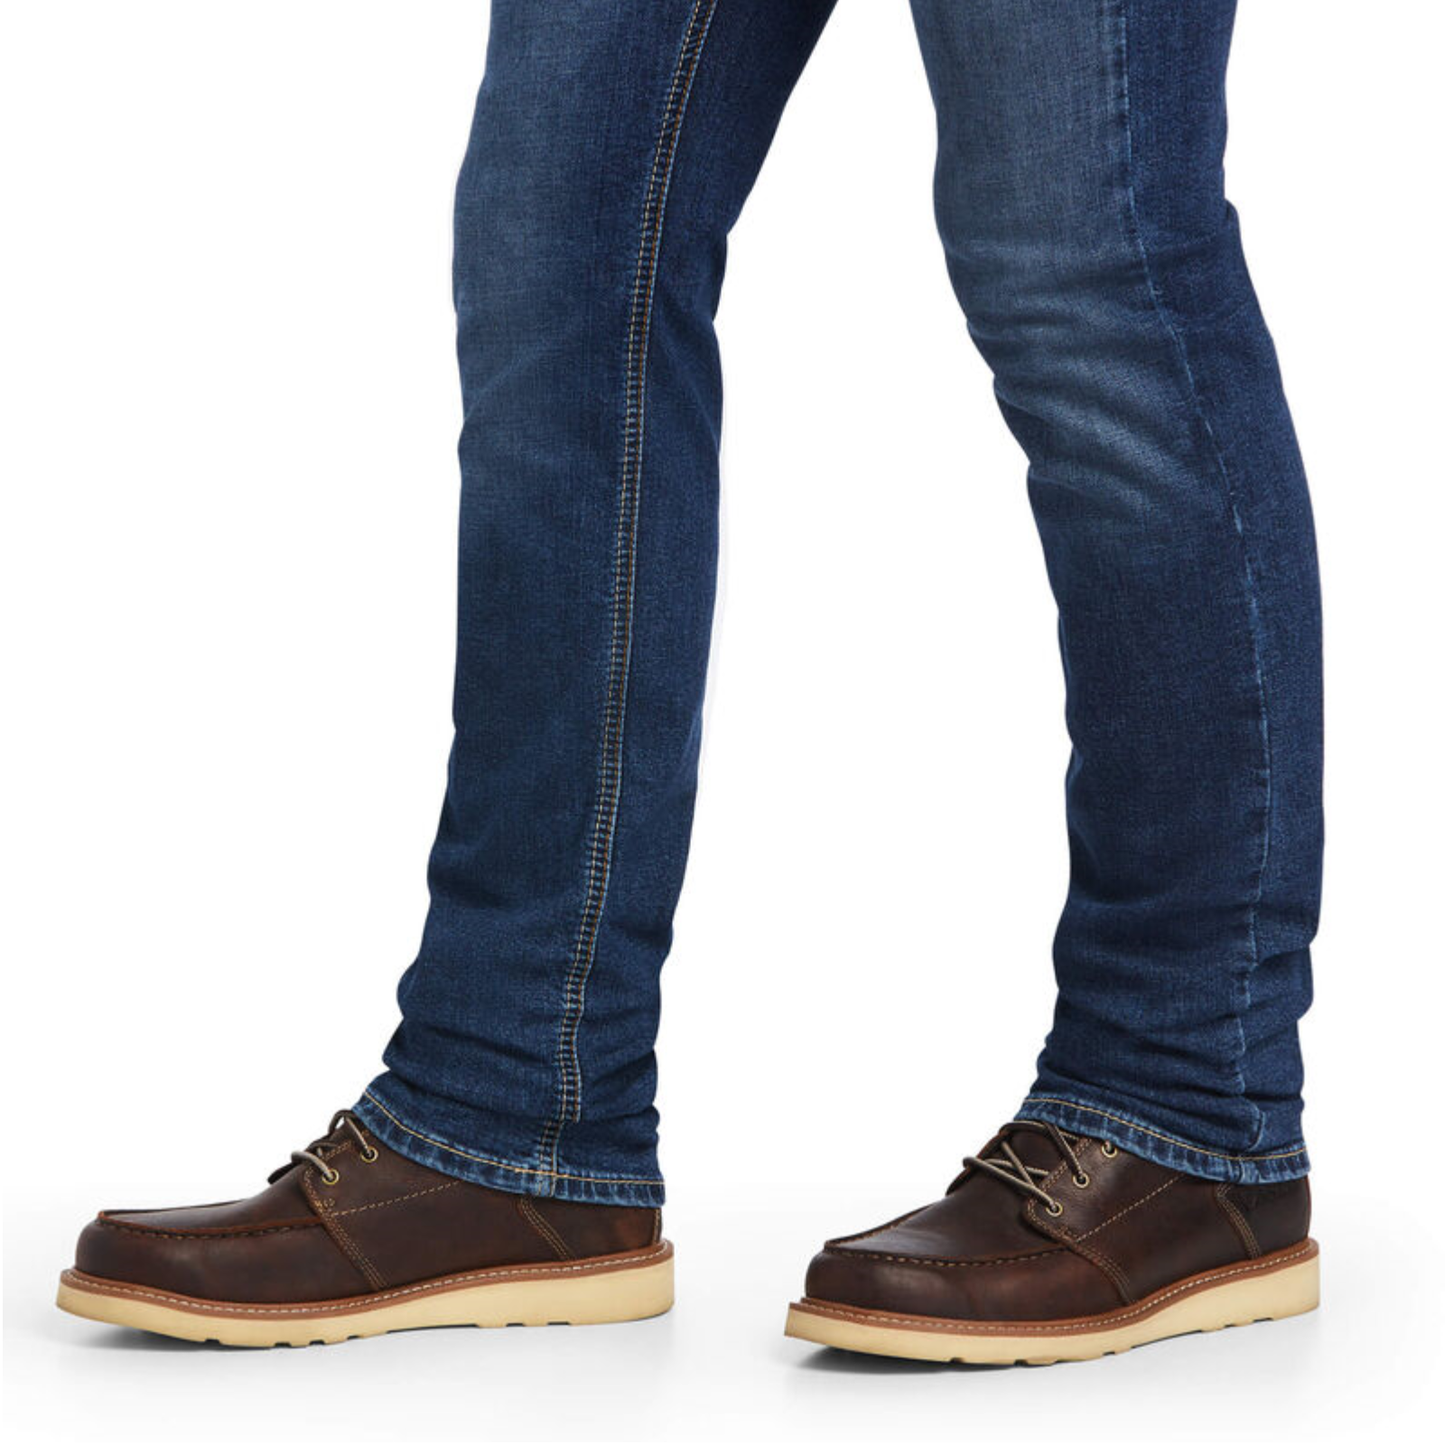 Ariat® Men's M8 Bodine Modern Kelton Slim Leg Jeans 10040500